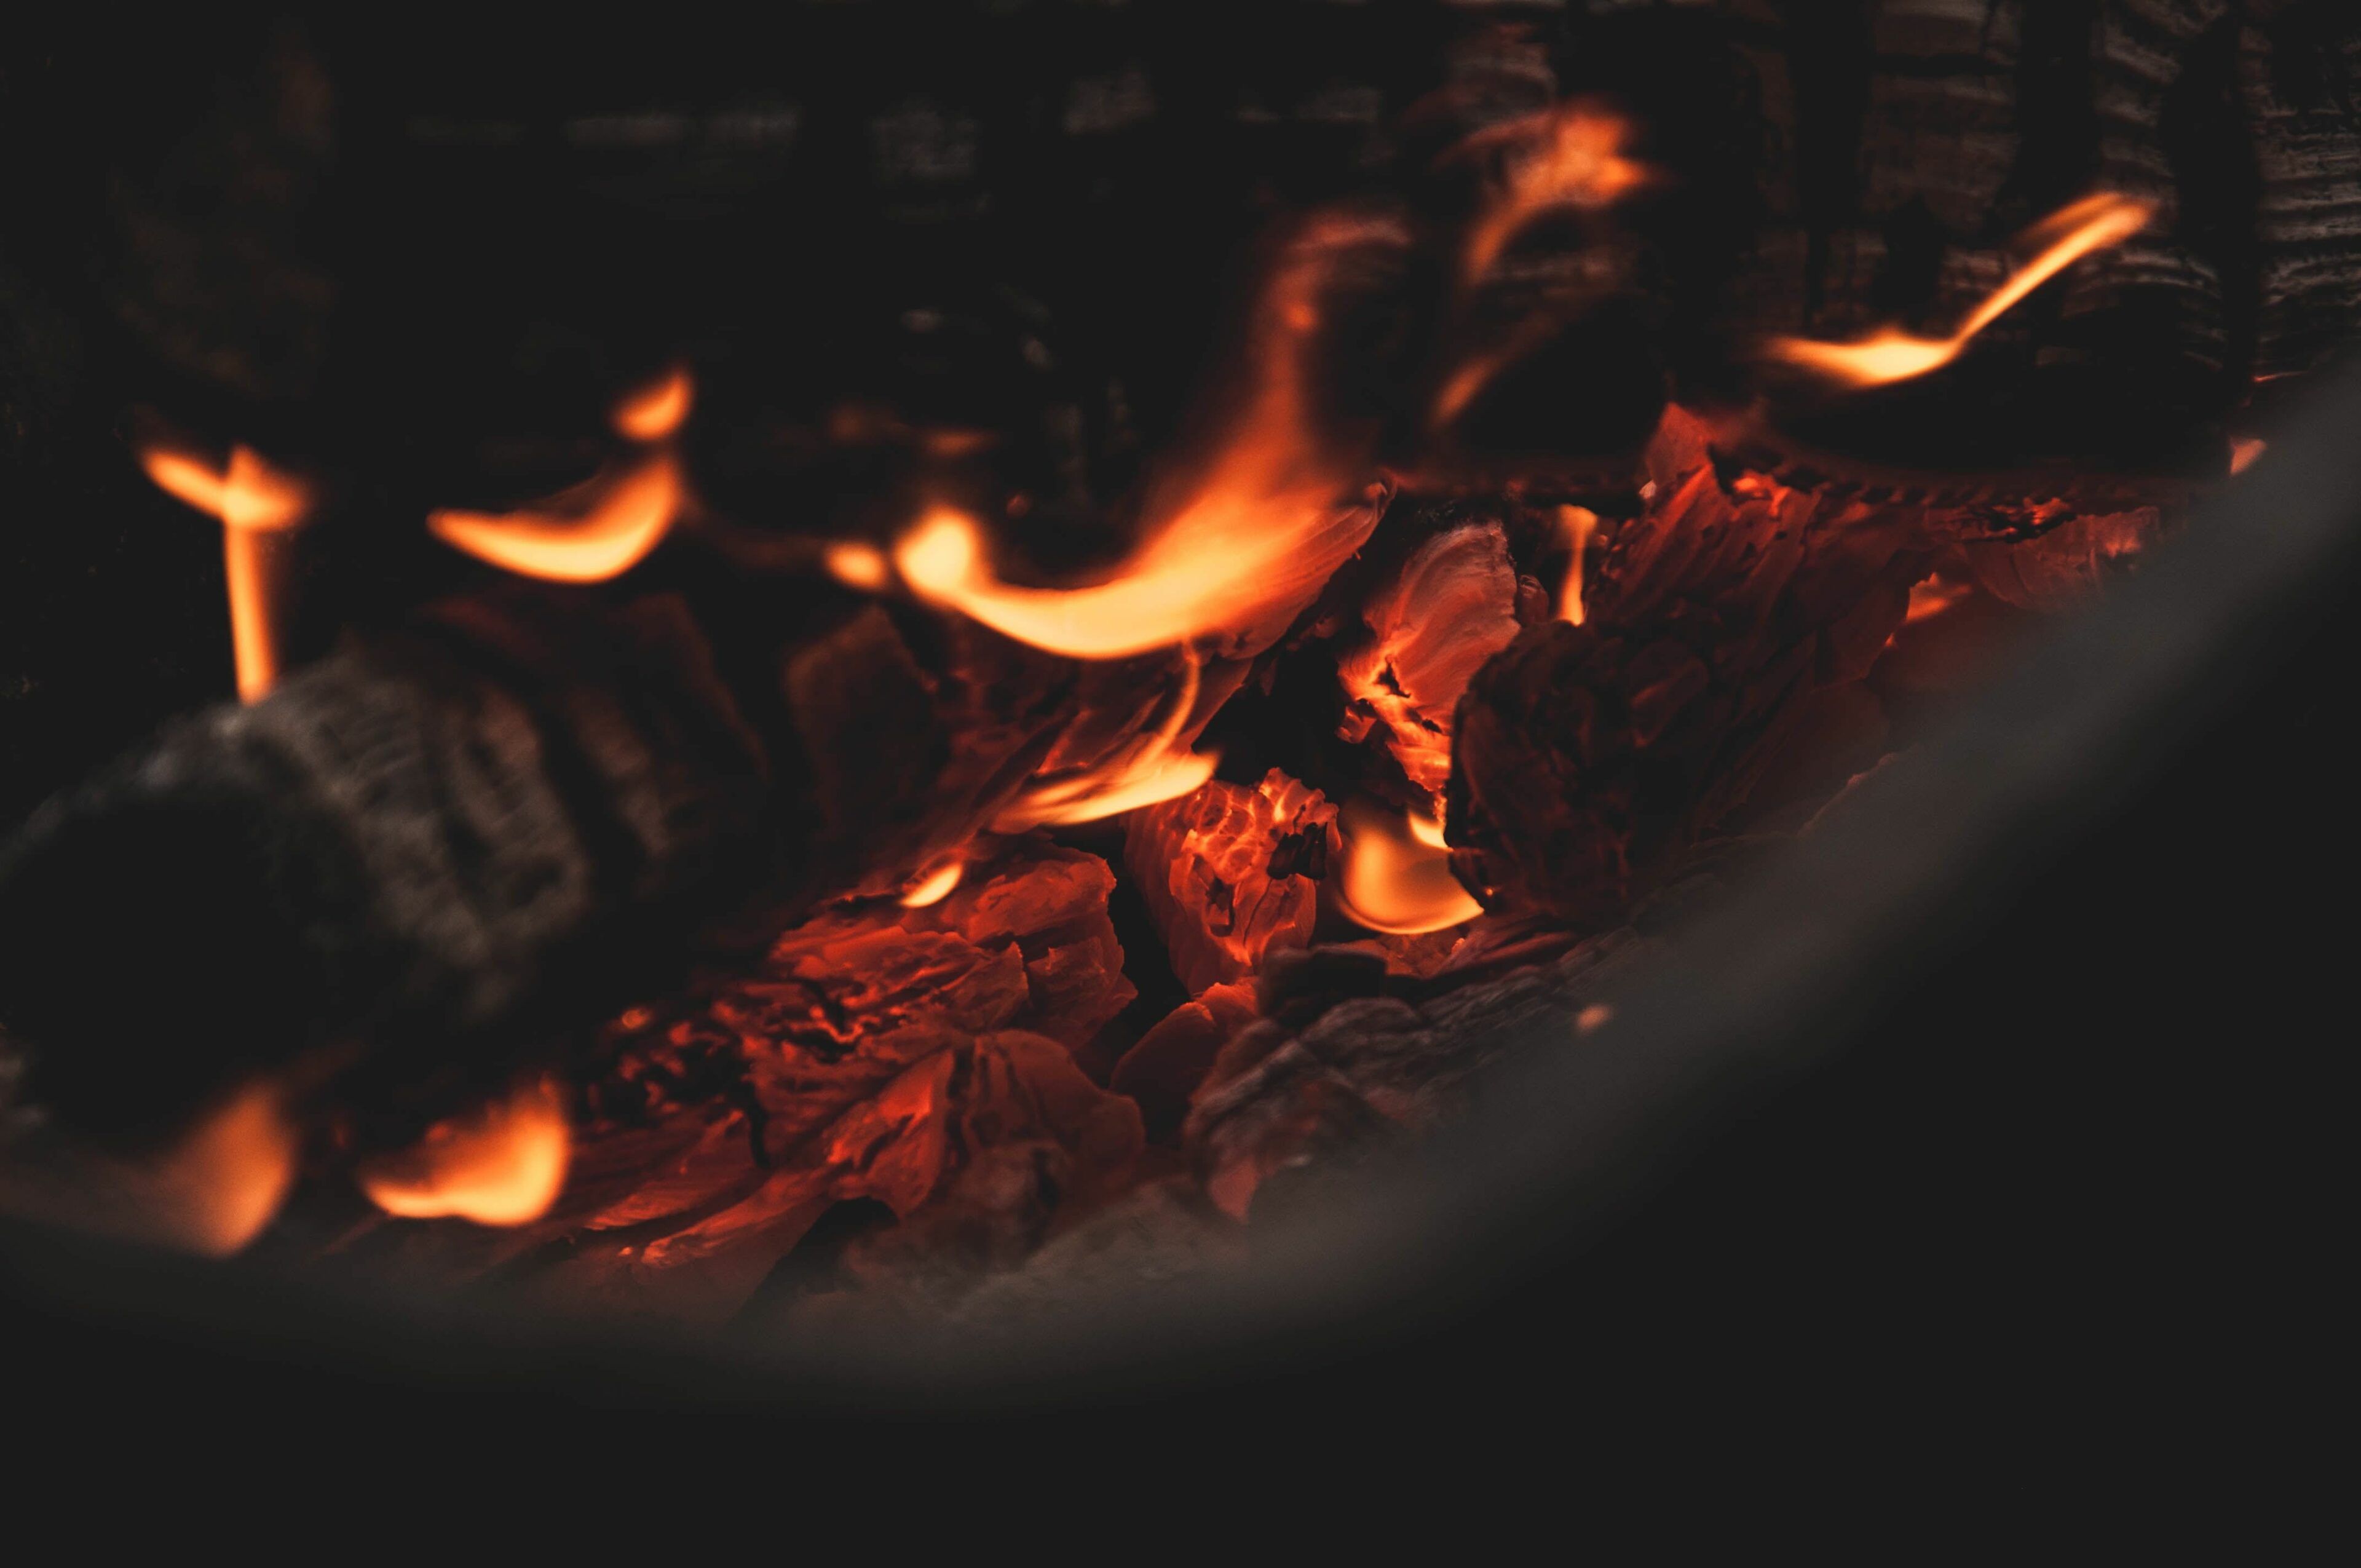 HD wallpaper: black charcoal, bonfire, coals, fire Phenomenon, flame Wallpaper Market